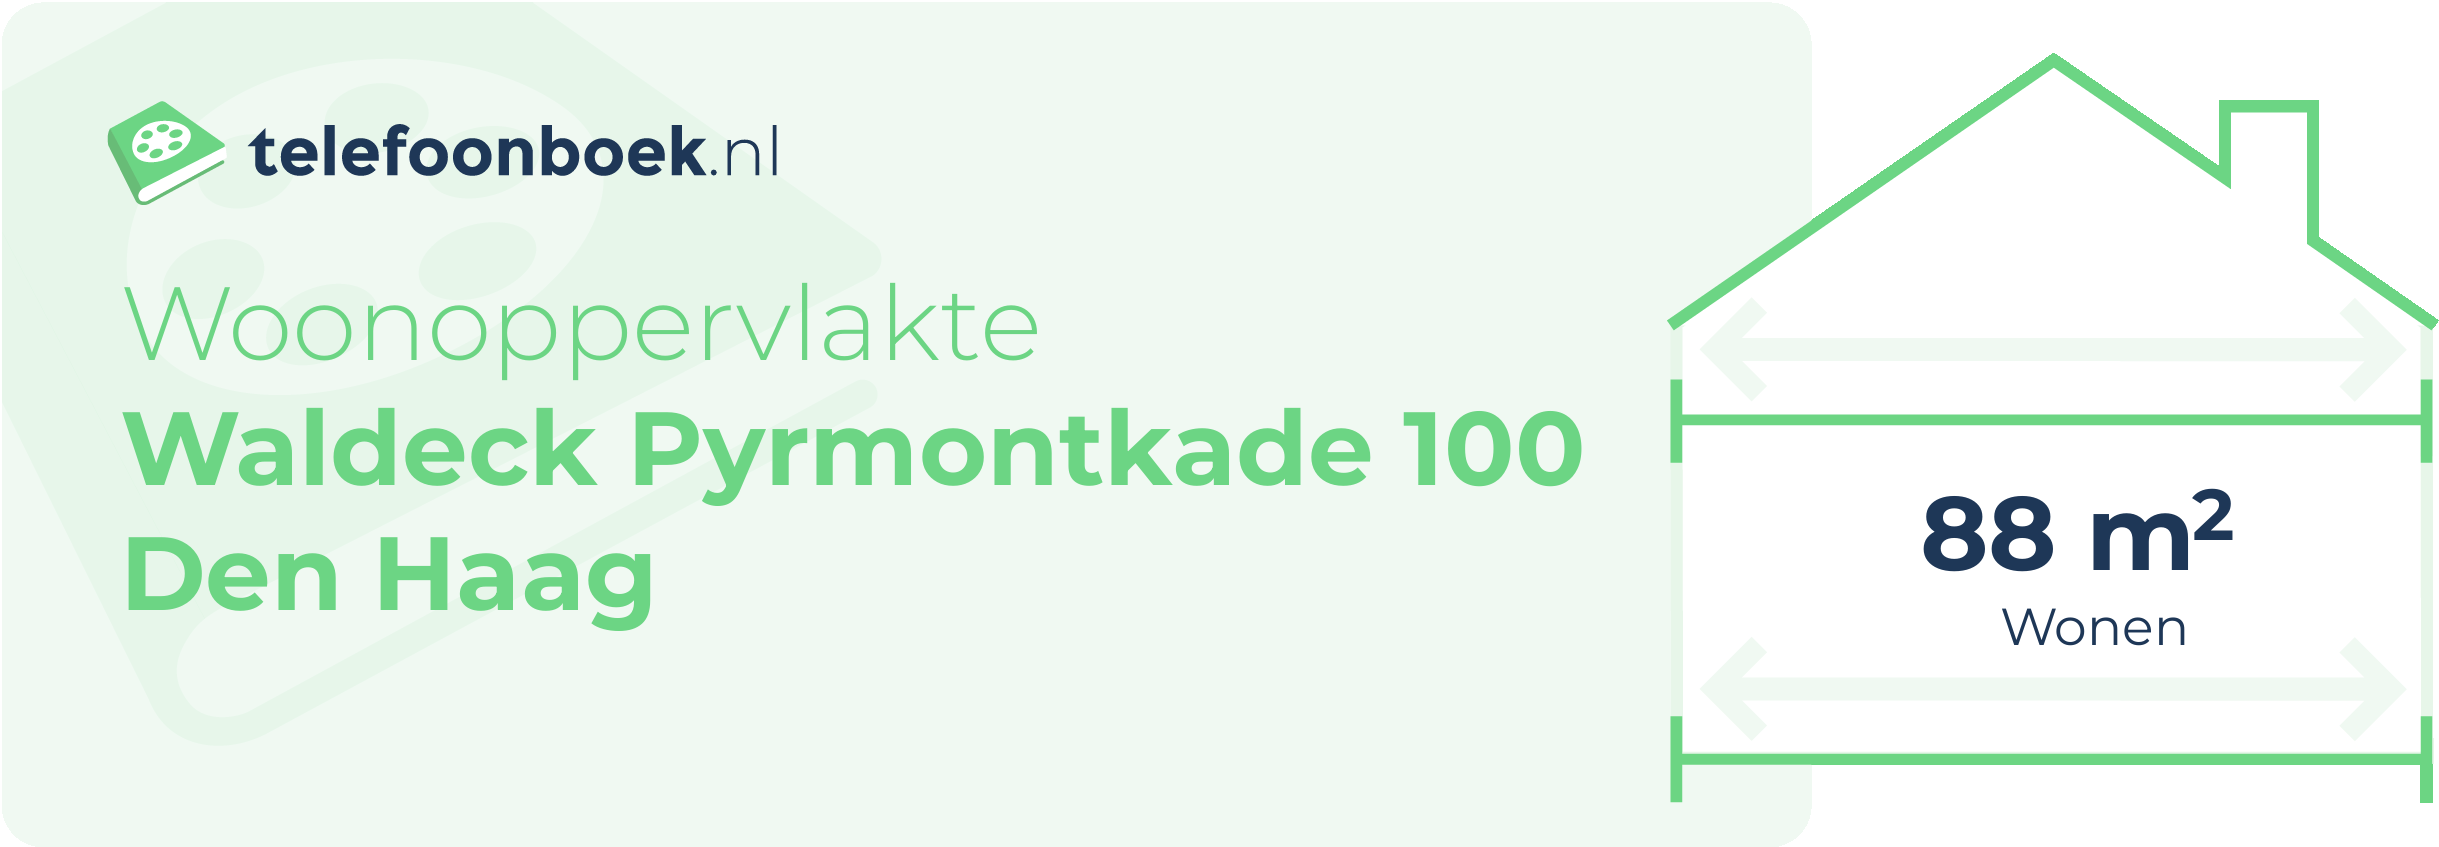 Woonoppervlakte Waldeck Pyrmontkade 100 Den Haag